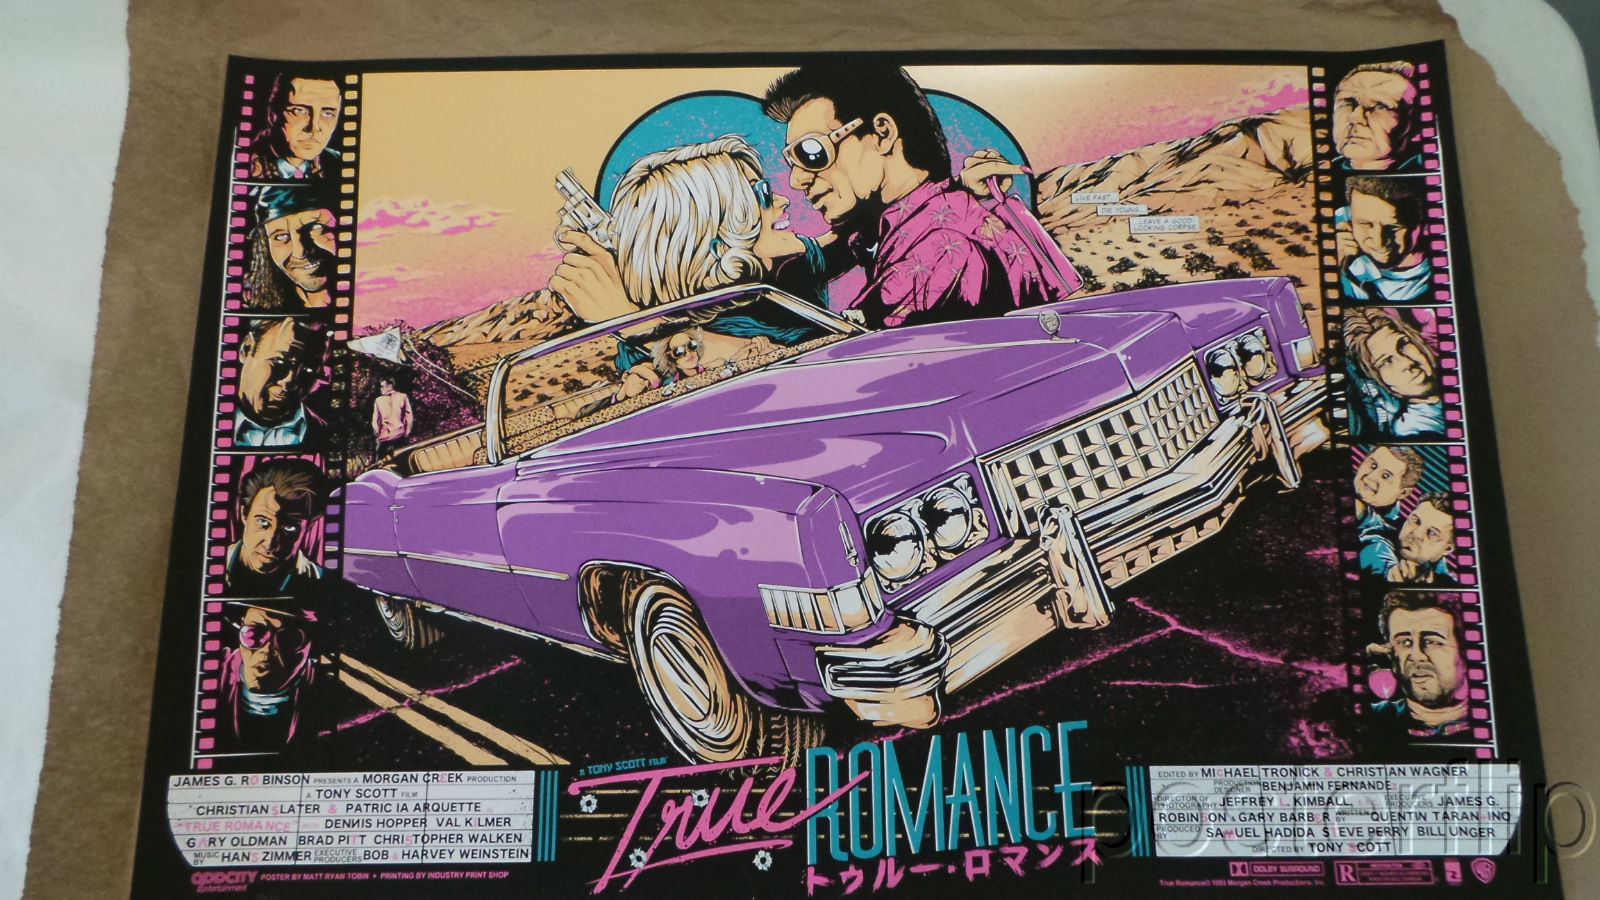 Matt Ryan Tobin True Romance 36x24 Live Fast Die Young Variant Poster N'd xx/35